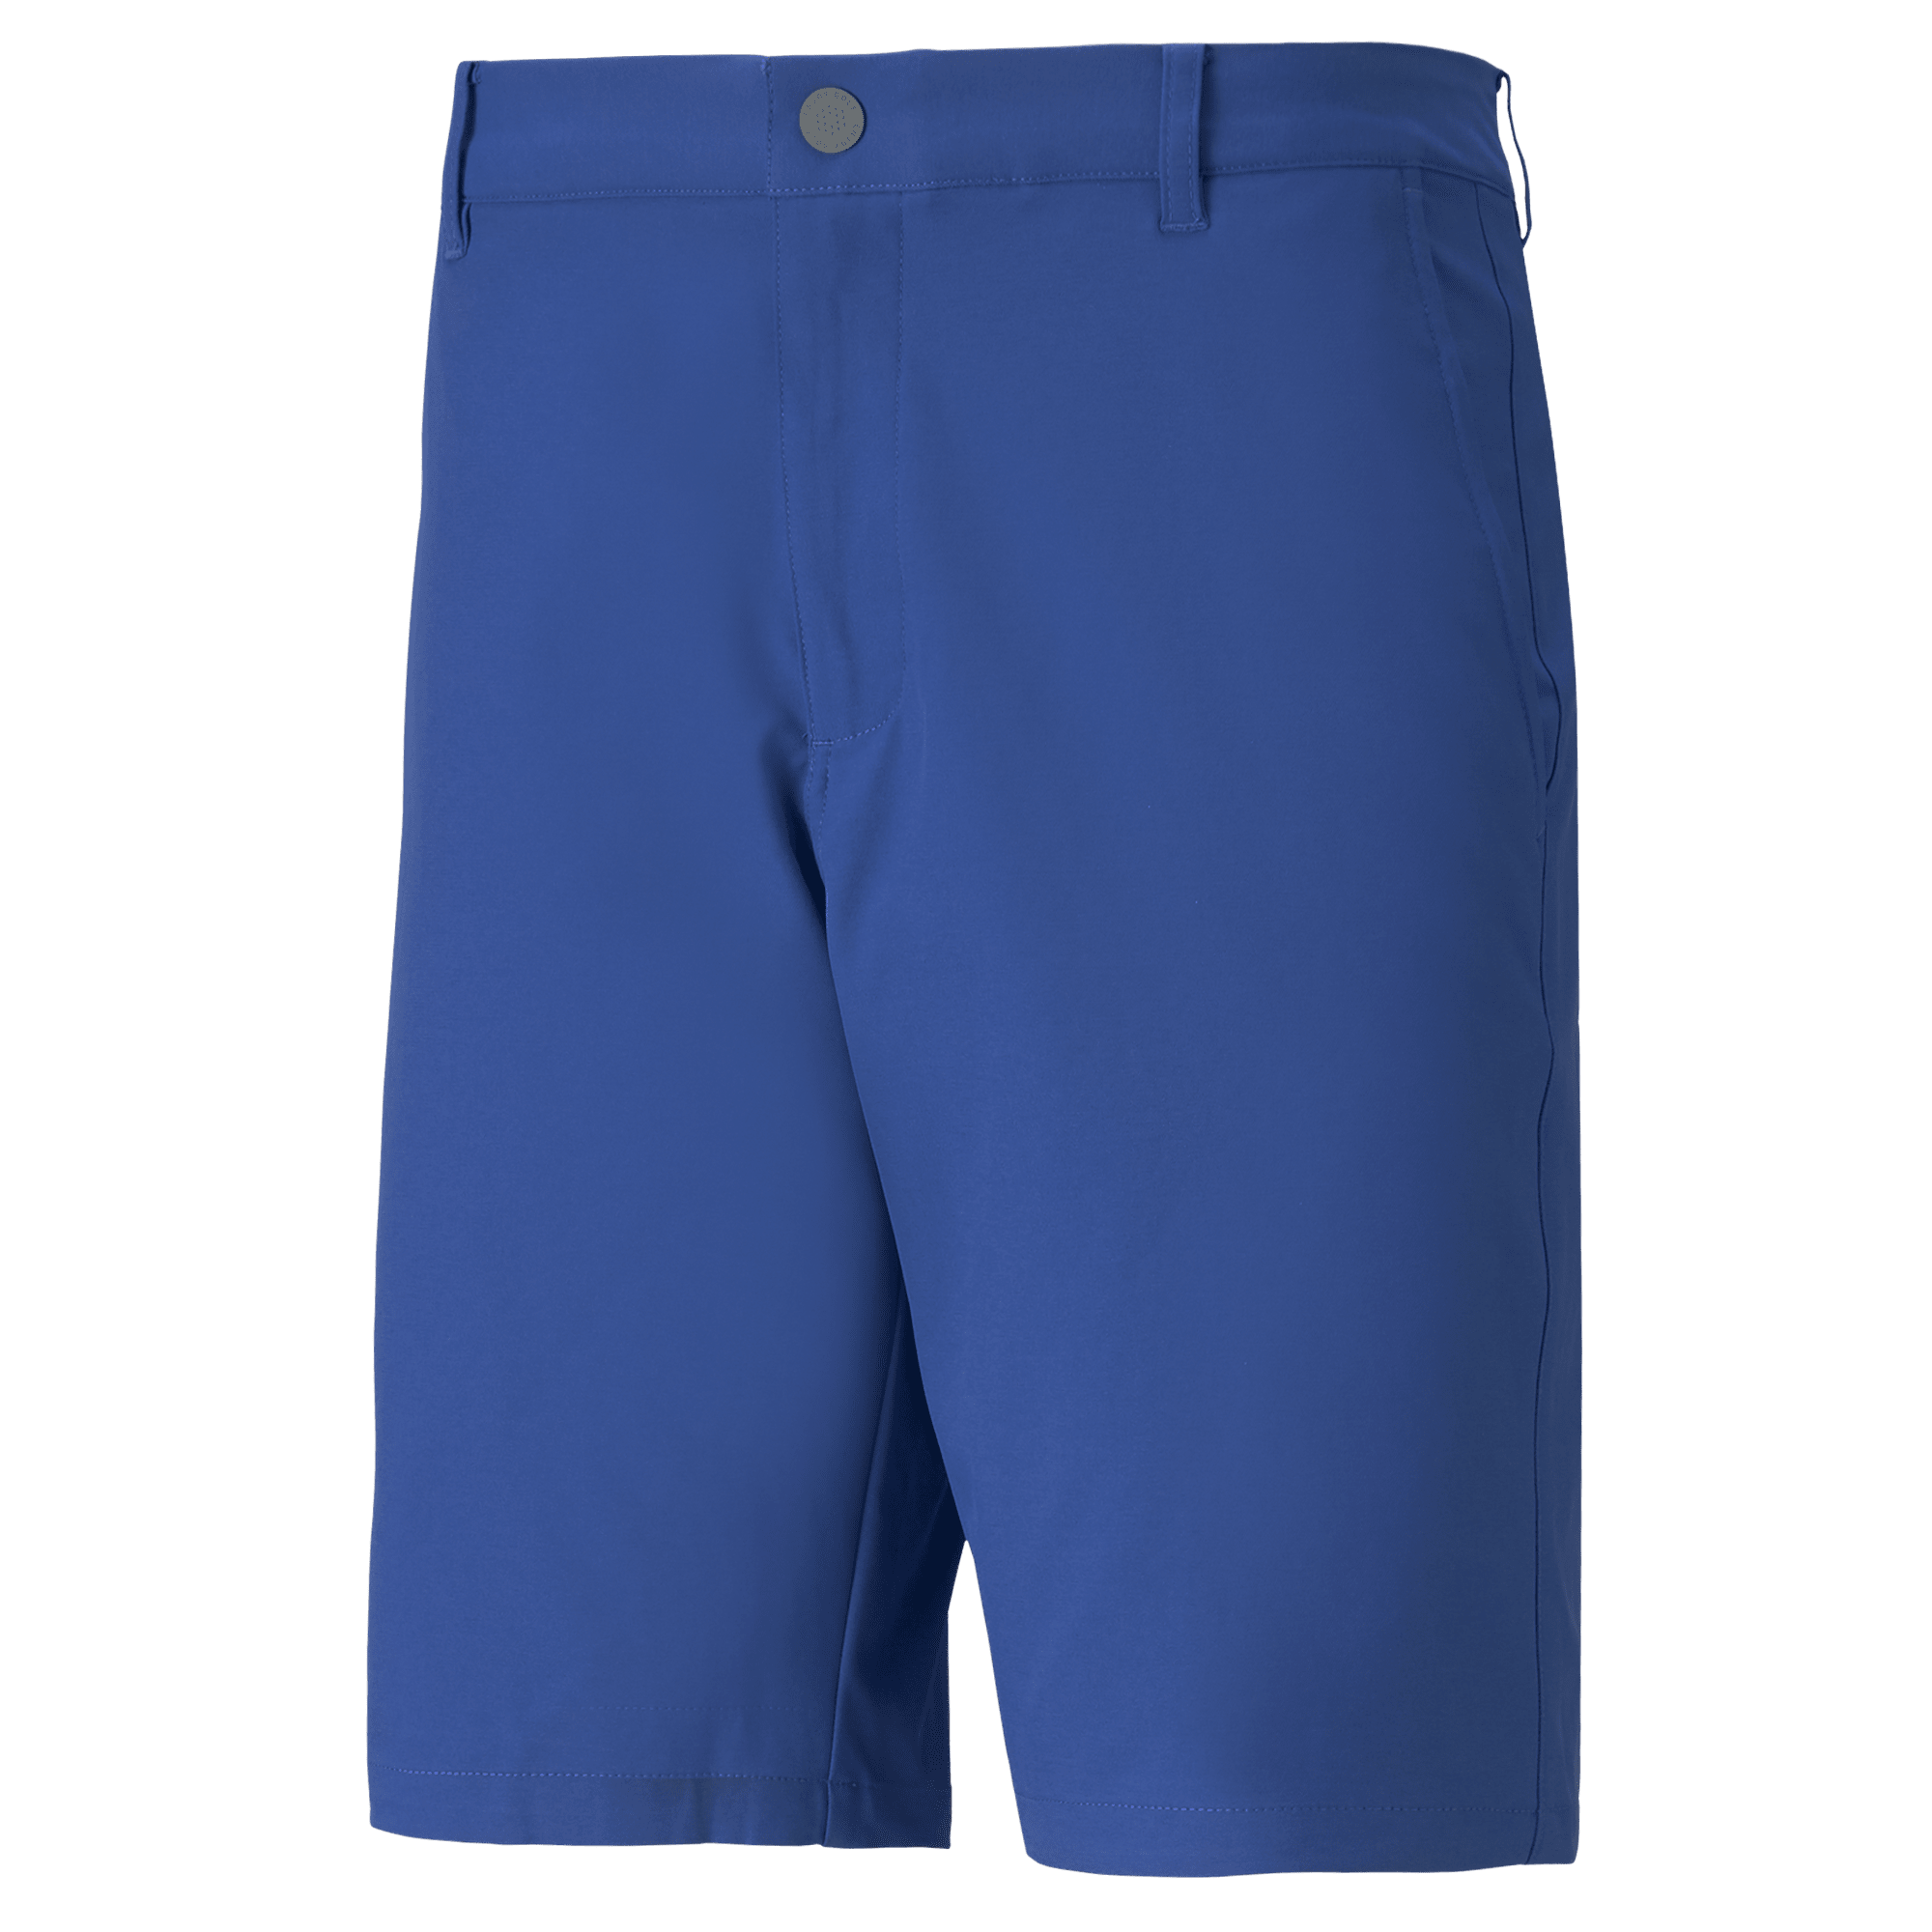 HEAD Herren Club Bermudas  Shorts blau NEU 